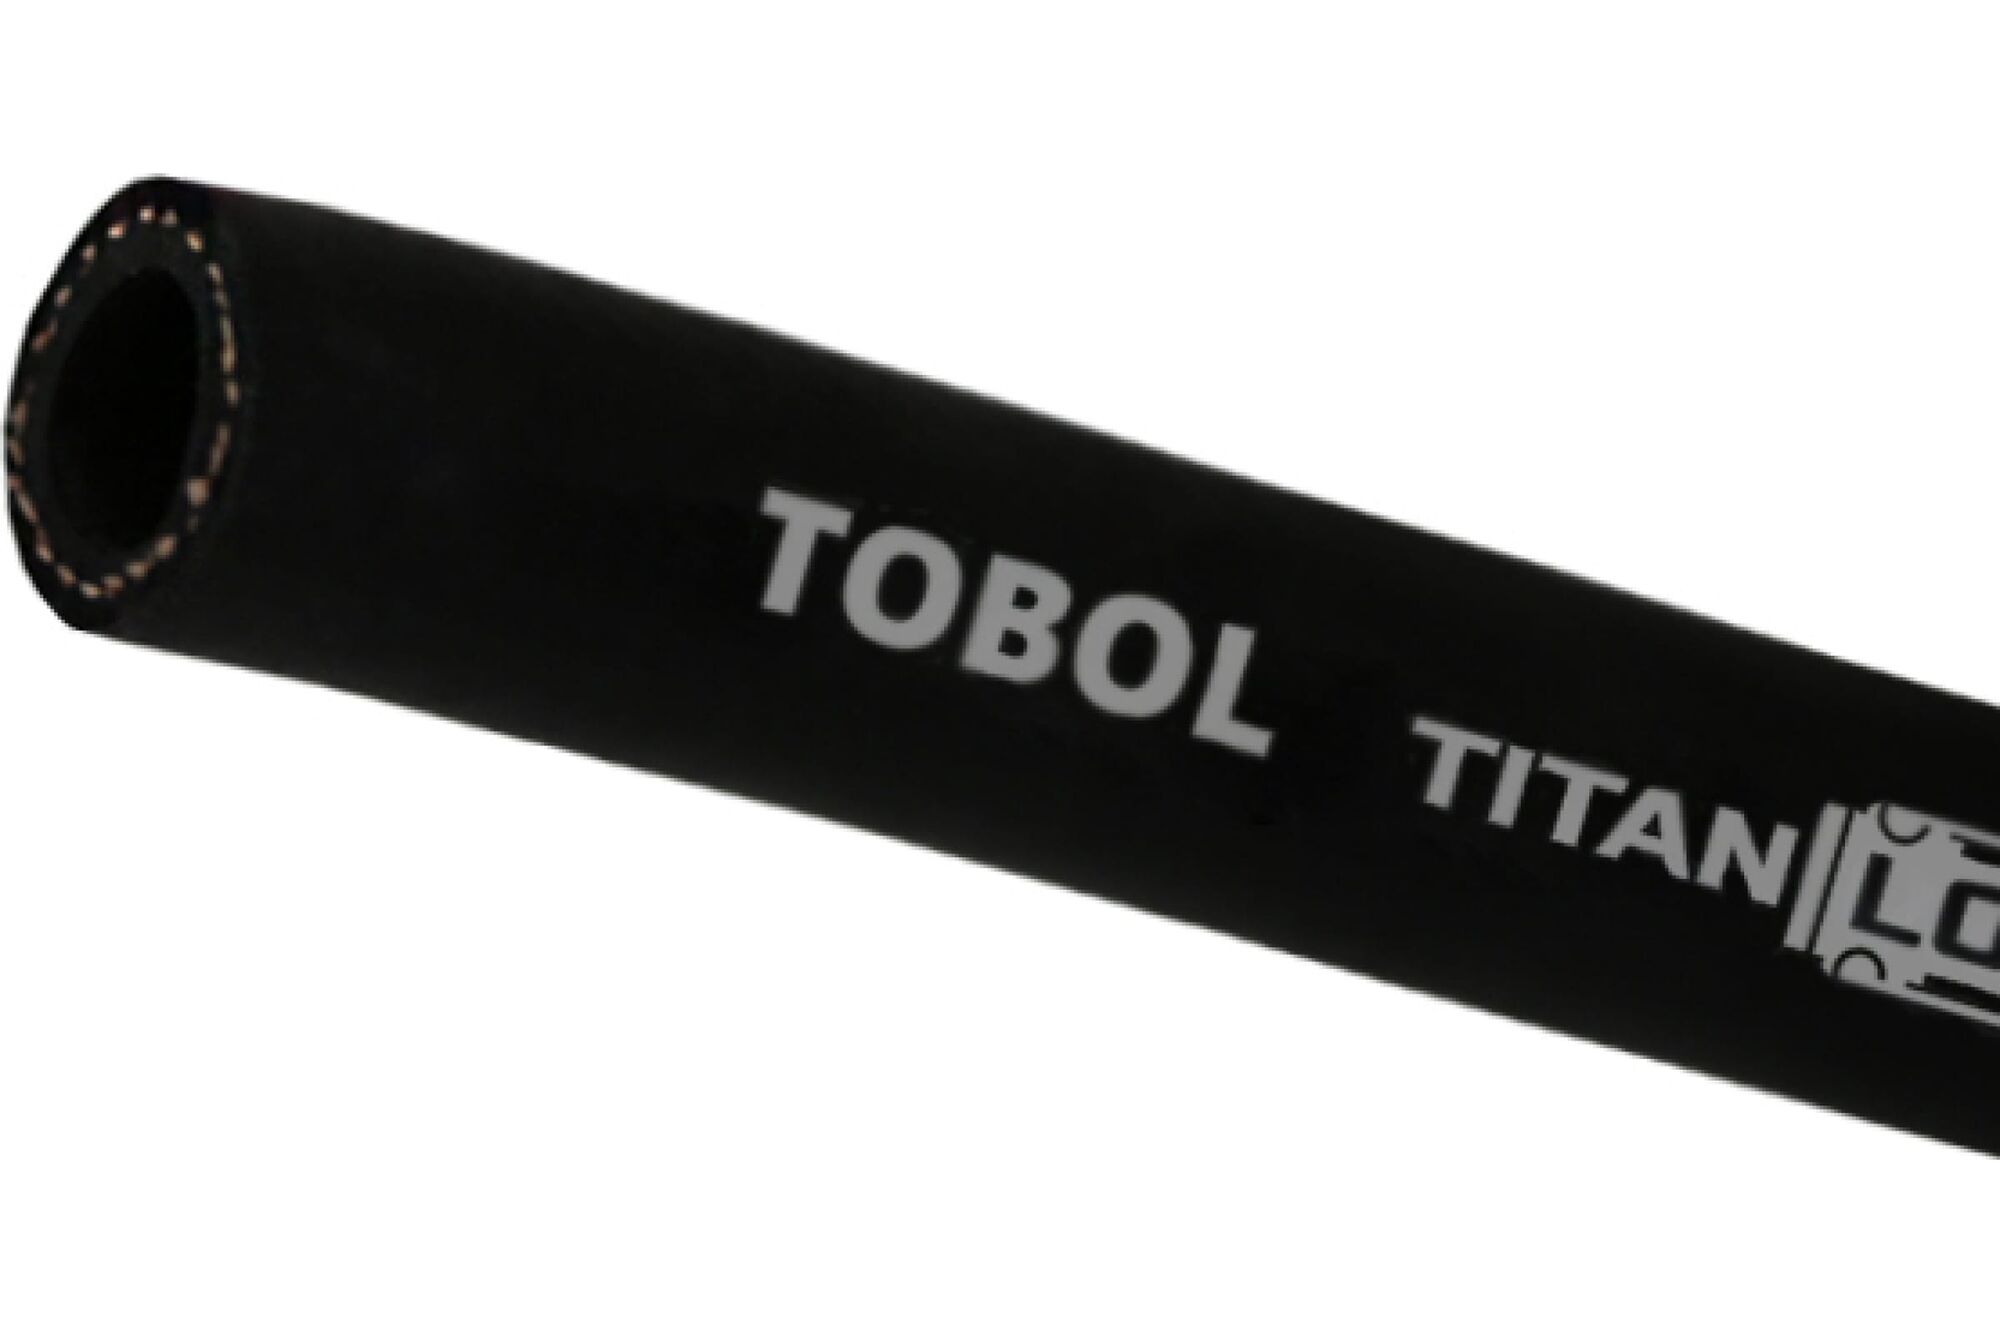 Маслобензостойкий напорный рукав TITAN LOCK TOBOL, 20 Бар, внутренний диаметр 25 мм., TL025TB 10 м.